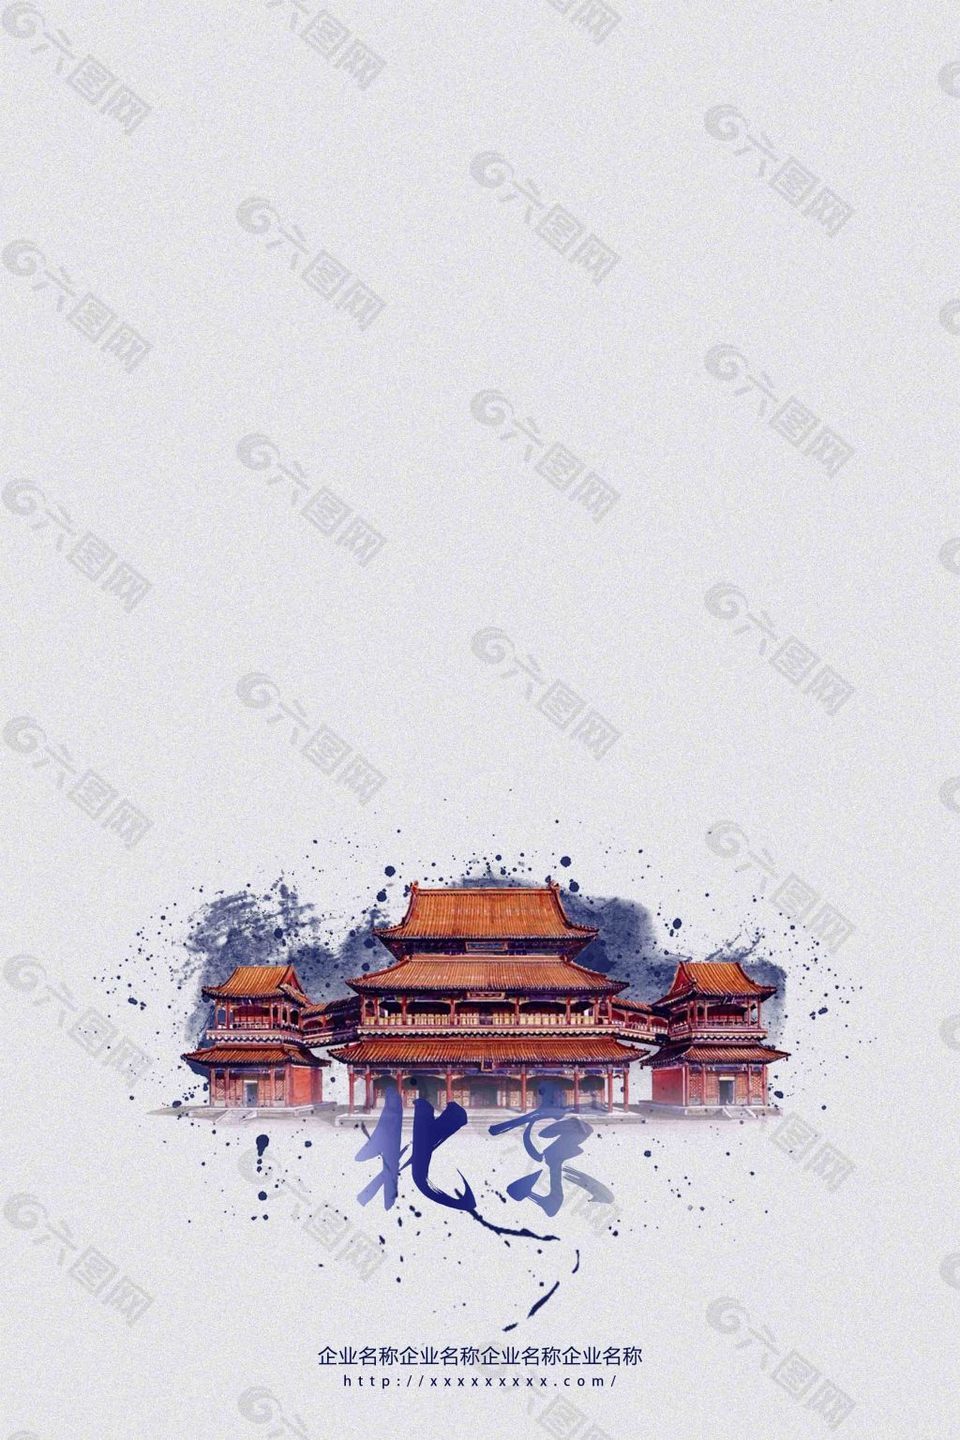 北京故宫建筑房子图片